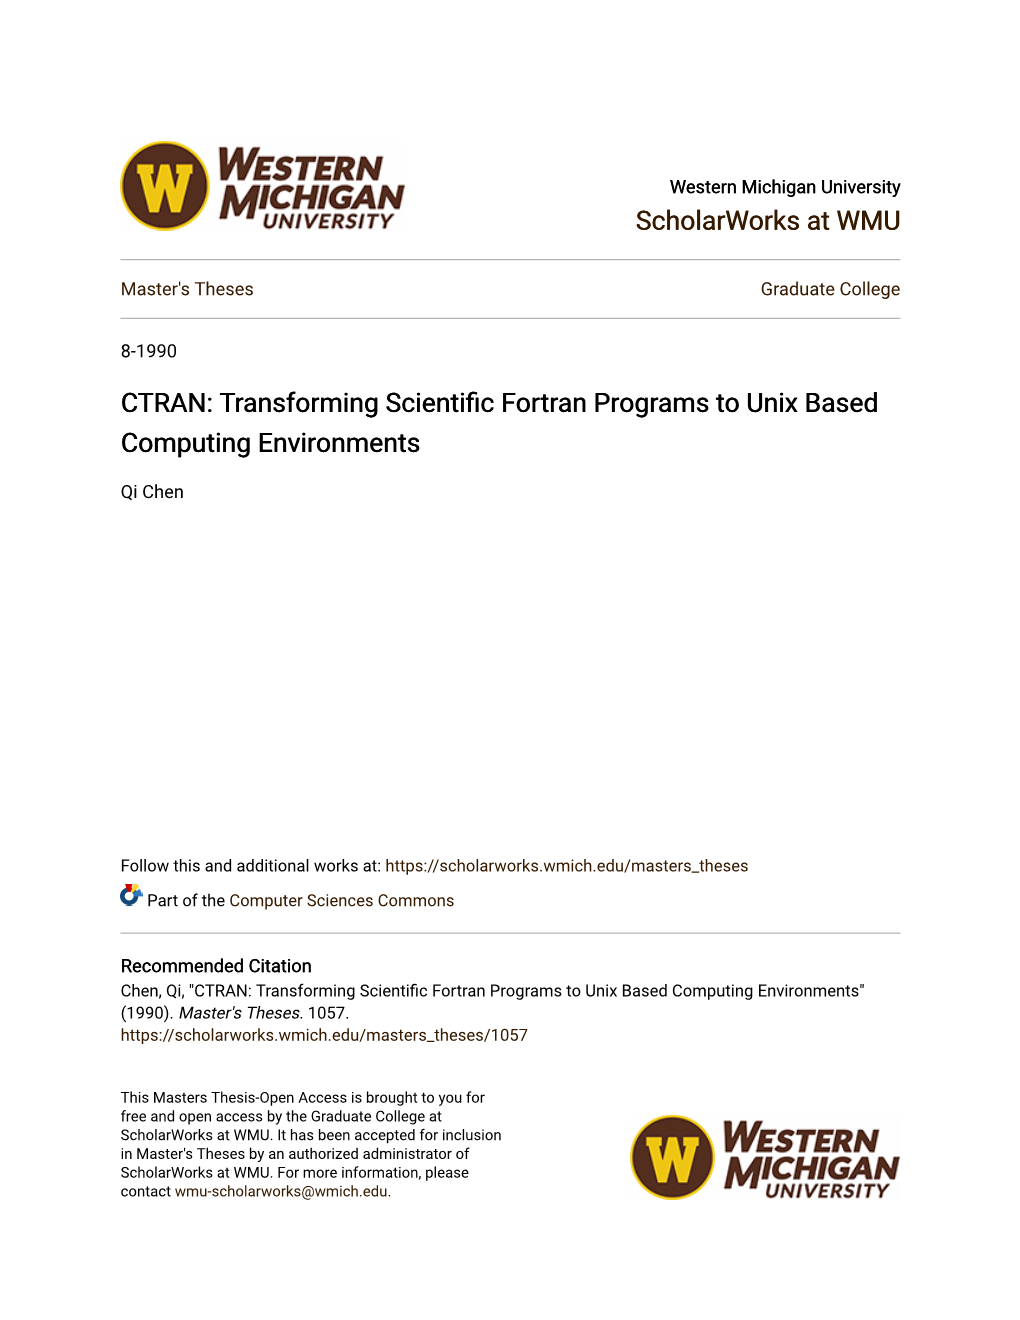 Ctran: Transforming Scientific Fortran Programs to Unix Based Computing Environments